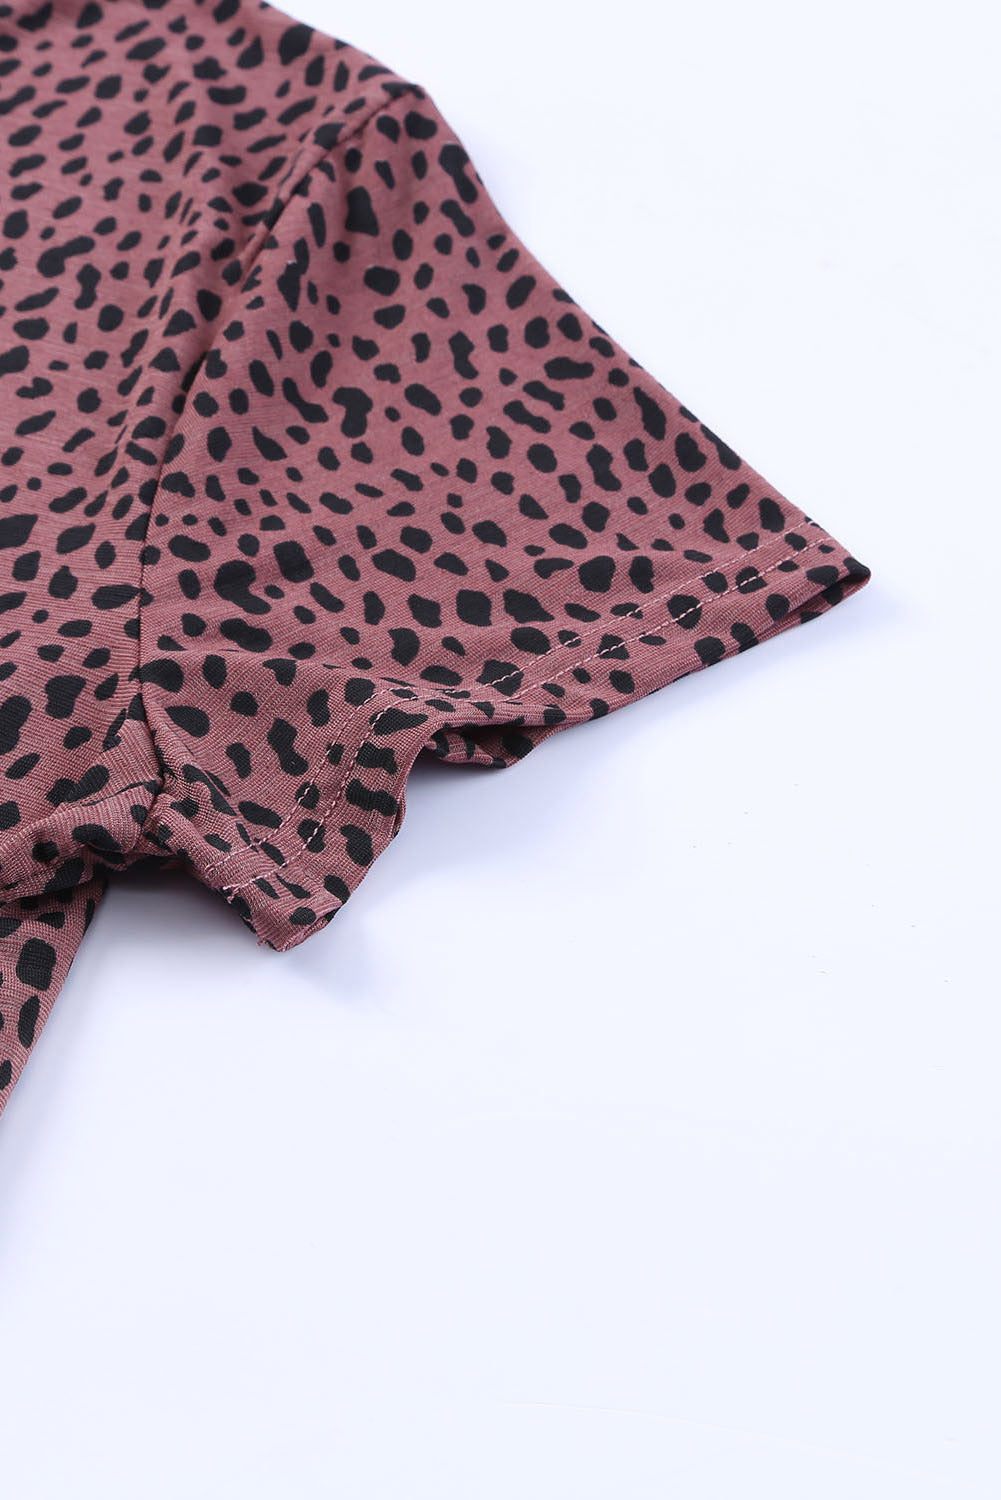 T-shirt à manches courtes et col rond imprimé guépard rouge vif